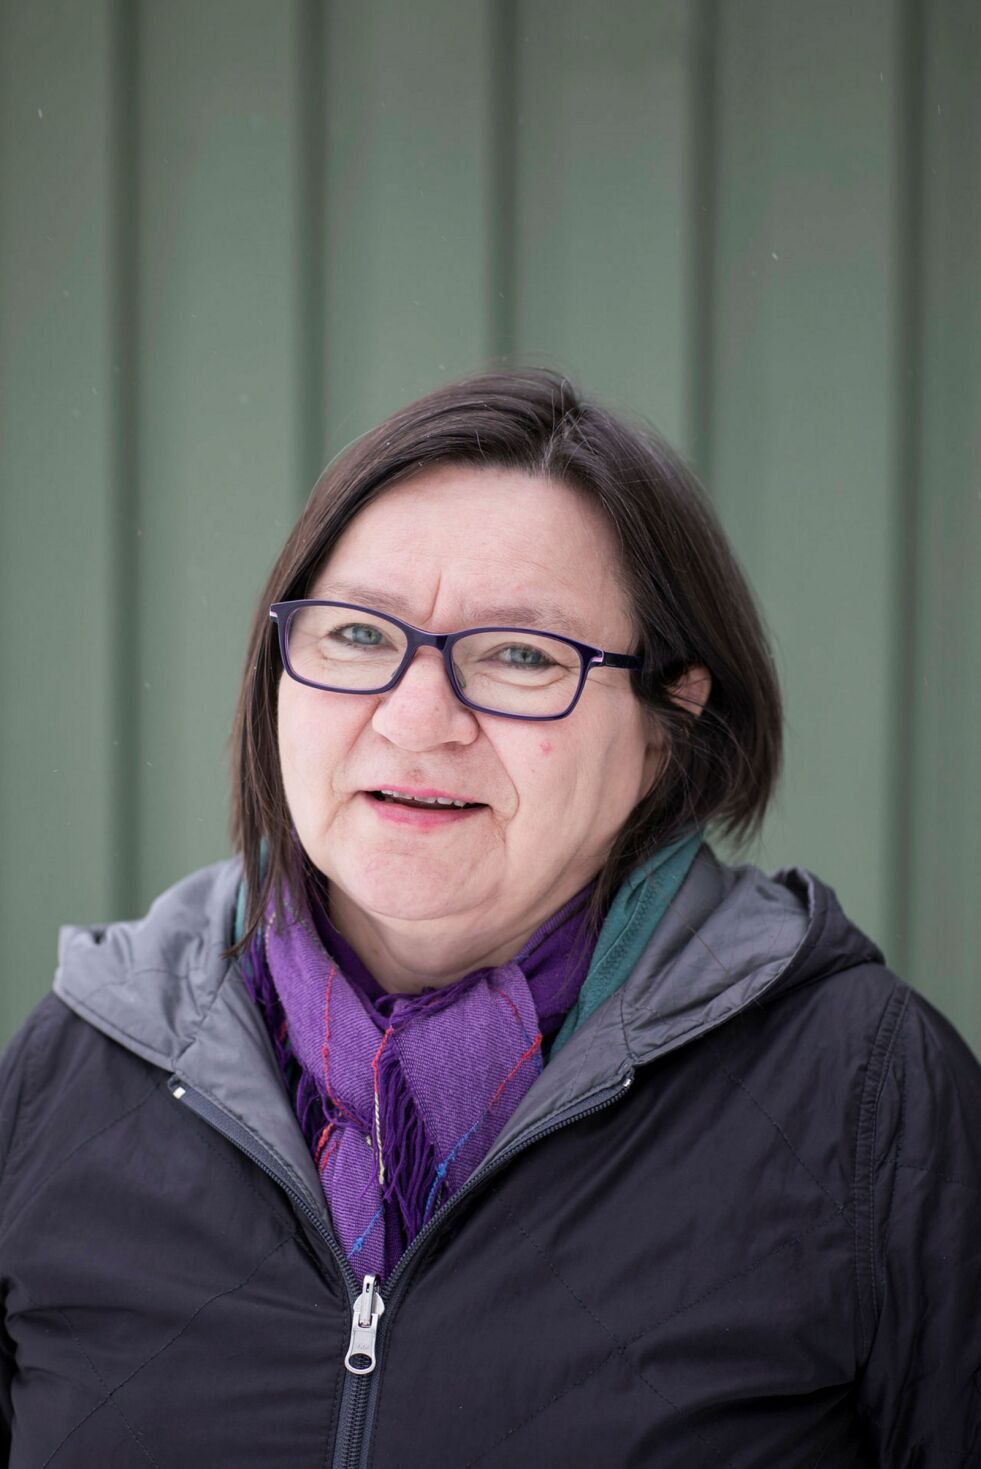 Marianne Madvig Hansen, leder i Min árbe Samisk kulturforening i Sør-Varanger, er lei for at all aktivitet utsettes, men ser det som en selvfølge å følge myndighetenes råd og tiltak. FOTO: SILJE L. KVAMMEN